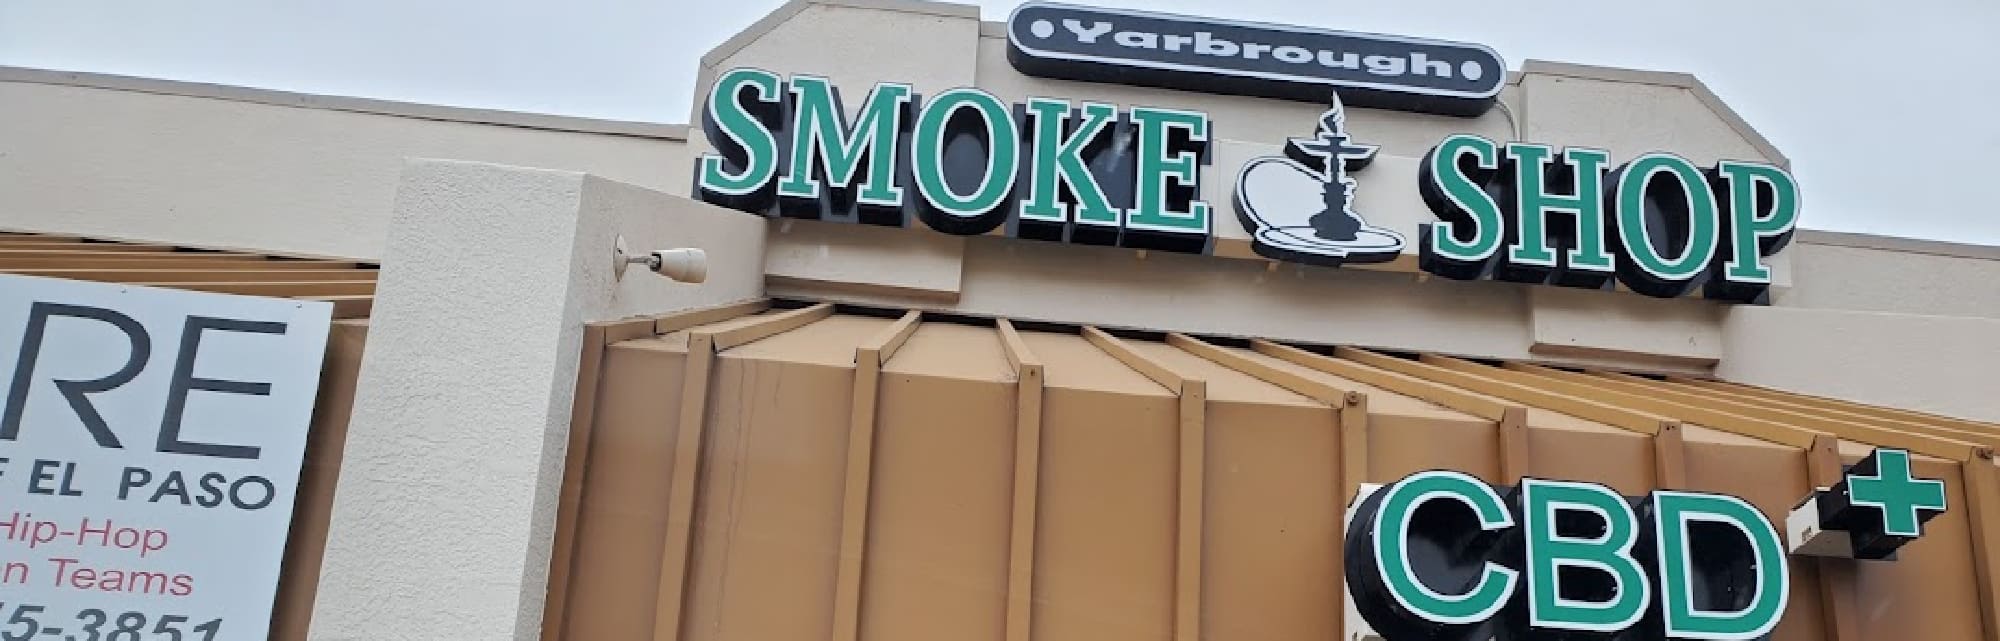 image of yarbrough smoke shop in ei paso